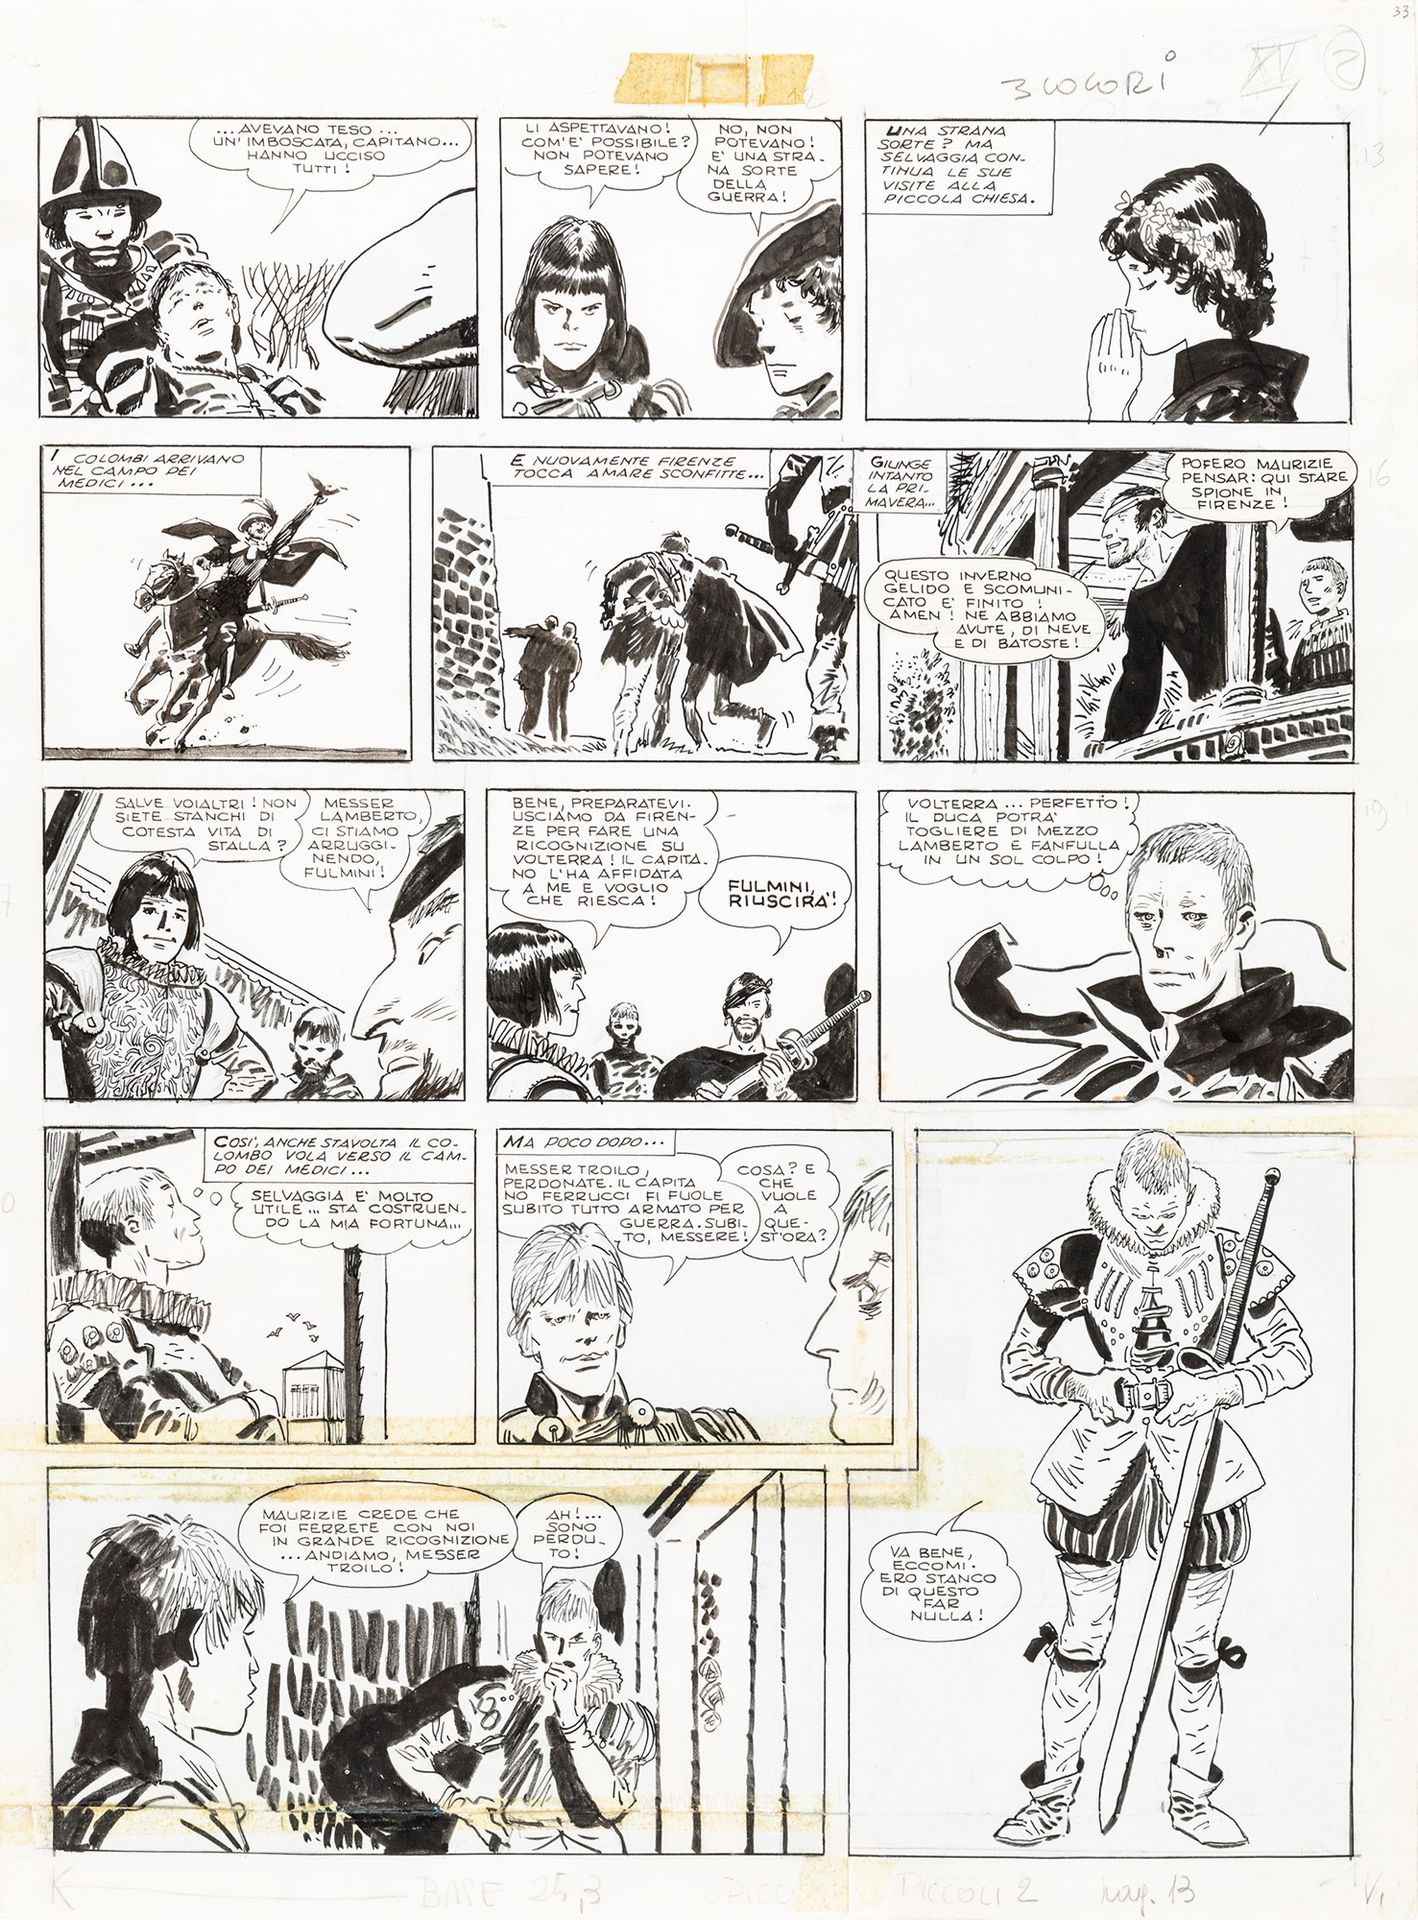 HUGO PRATT Le avventure di Fanfulla, 1967

crayon et encre sur carton fin
32,5 x&hellip;